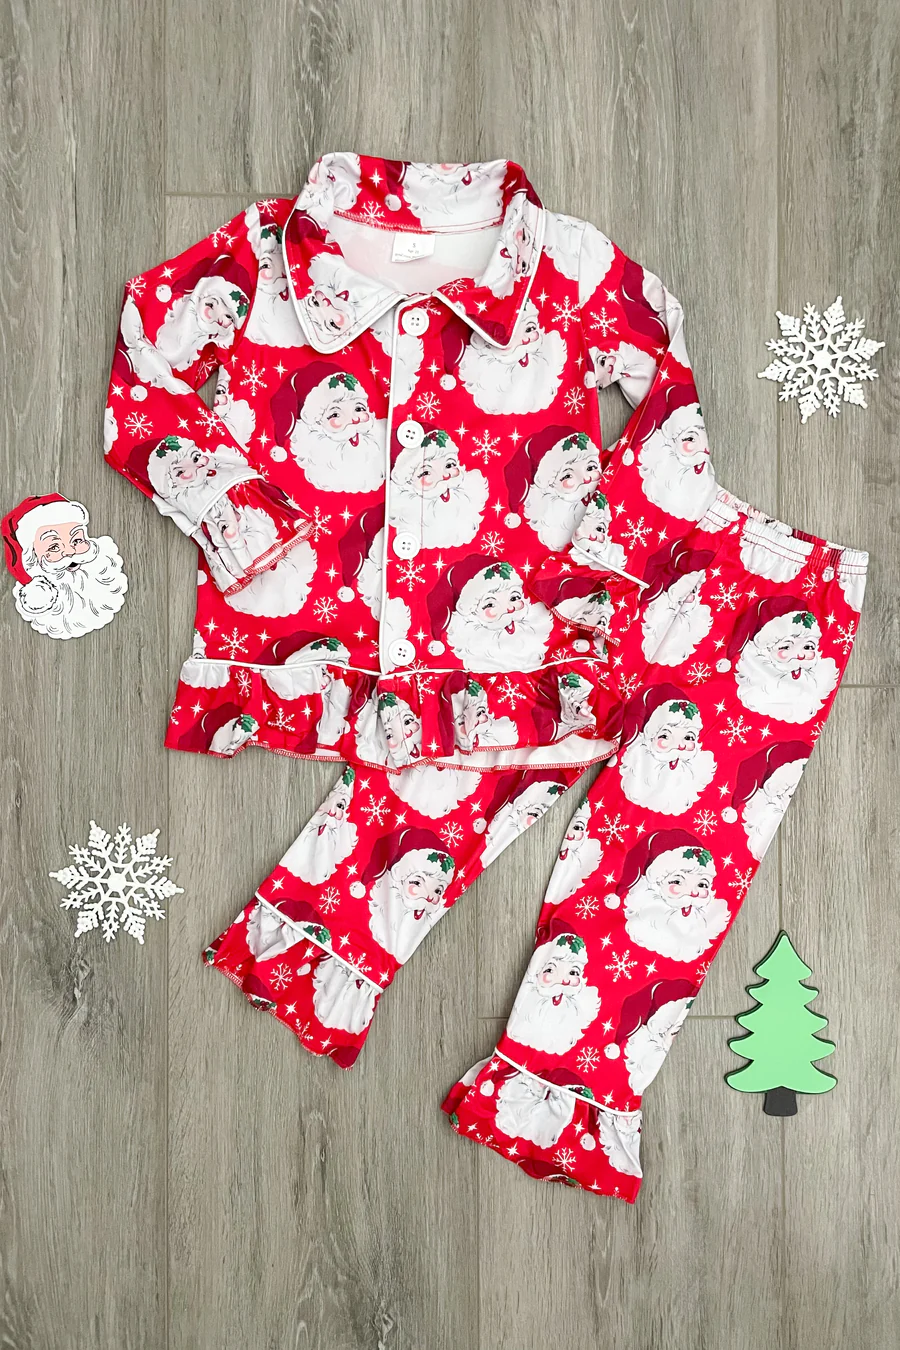 Girls Red Santa pajamas